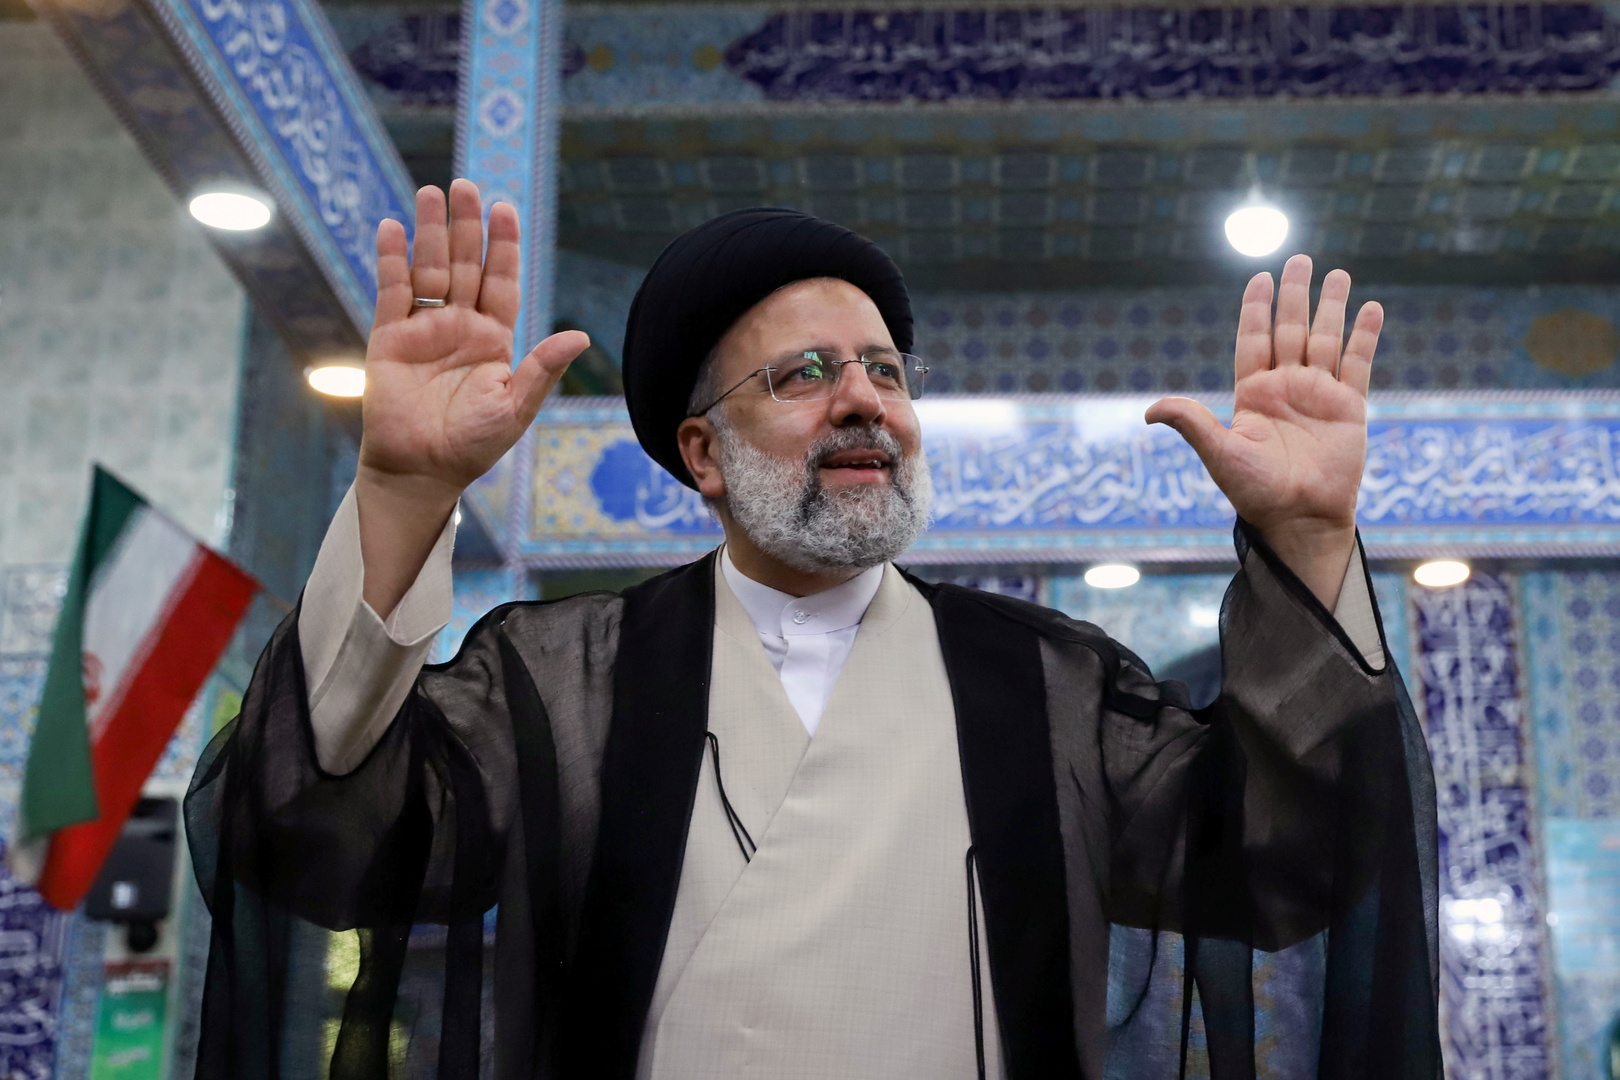 إبراهيم رئيسي يفوز بانتخابات الرئاسة الإيرانية